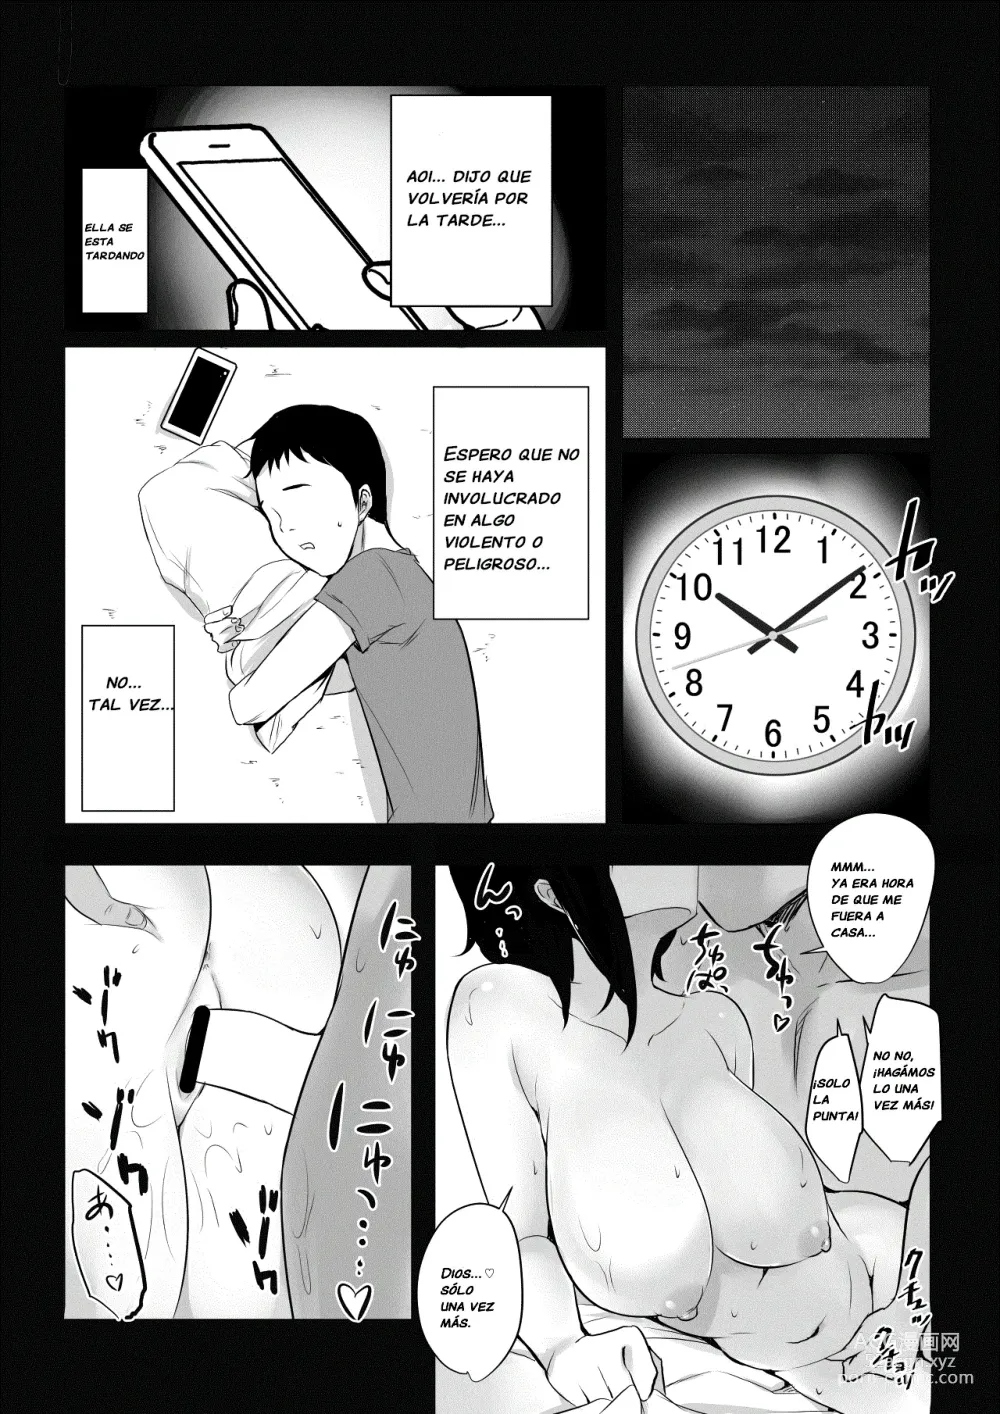 Page 32 of doujinshi Vi a una esposa de preparatoria de grandes pechos que solo deja que otro hombre la mime y abrace.